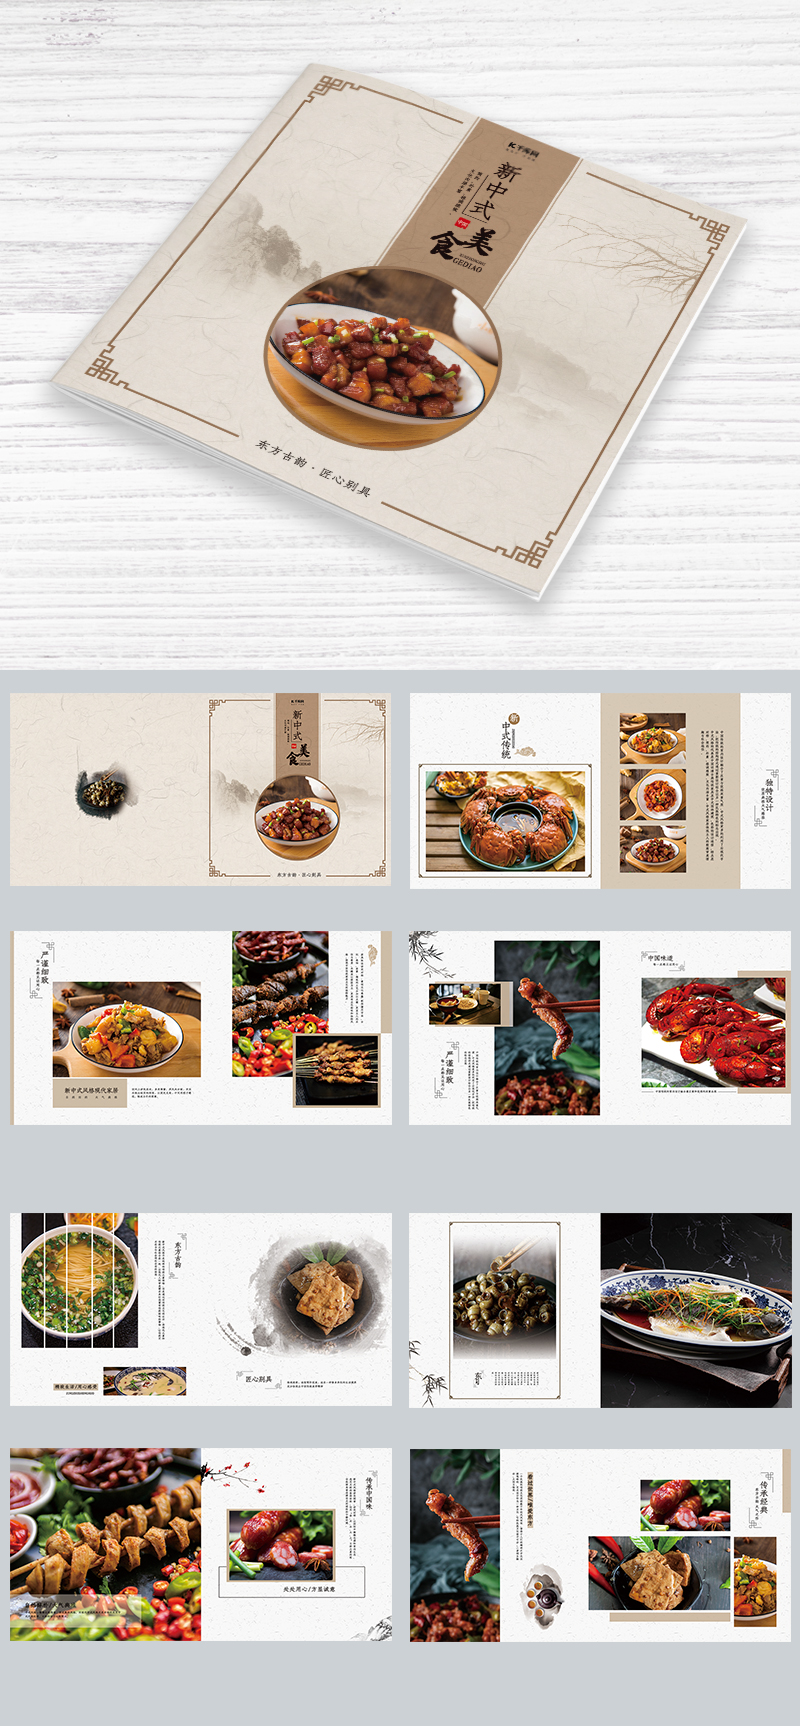 中国风美食画册通用模板画册图片